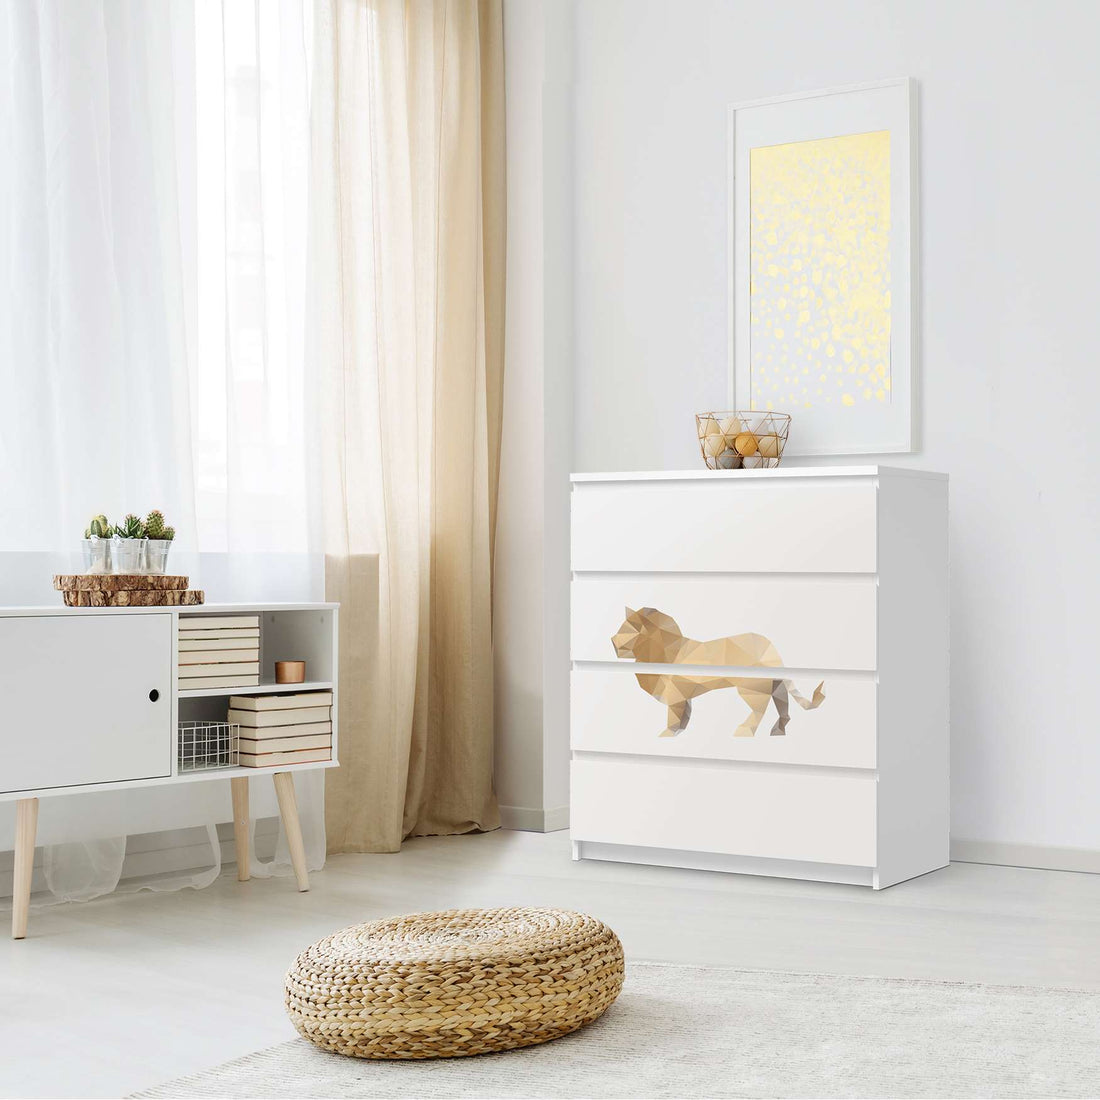 Folie für Möbel Origami Lion - IKEA Malm Kommode 4 Schubladen - Schlafzimmer